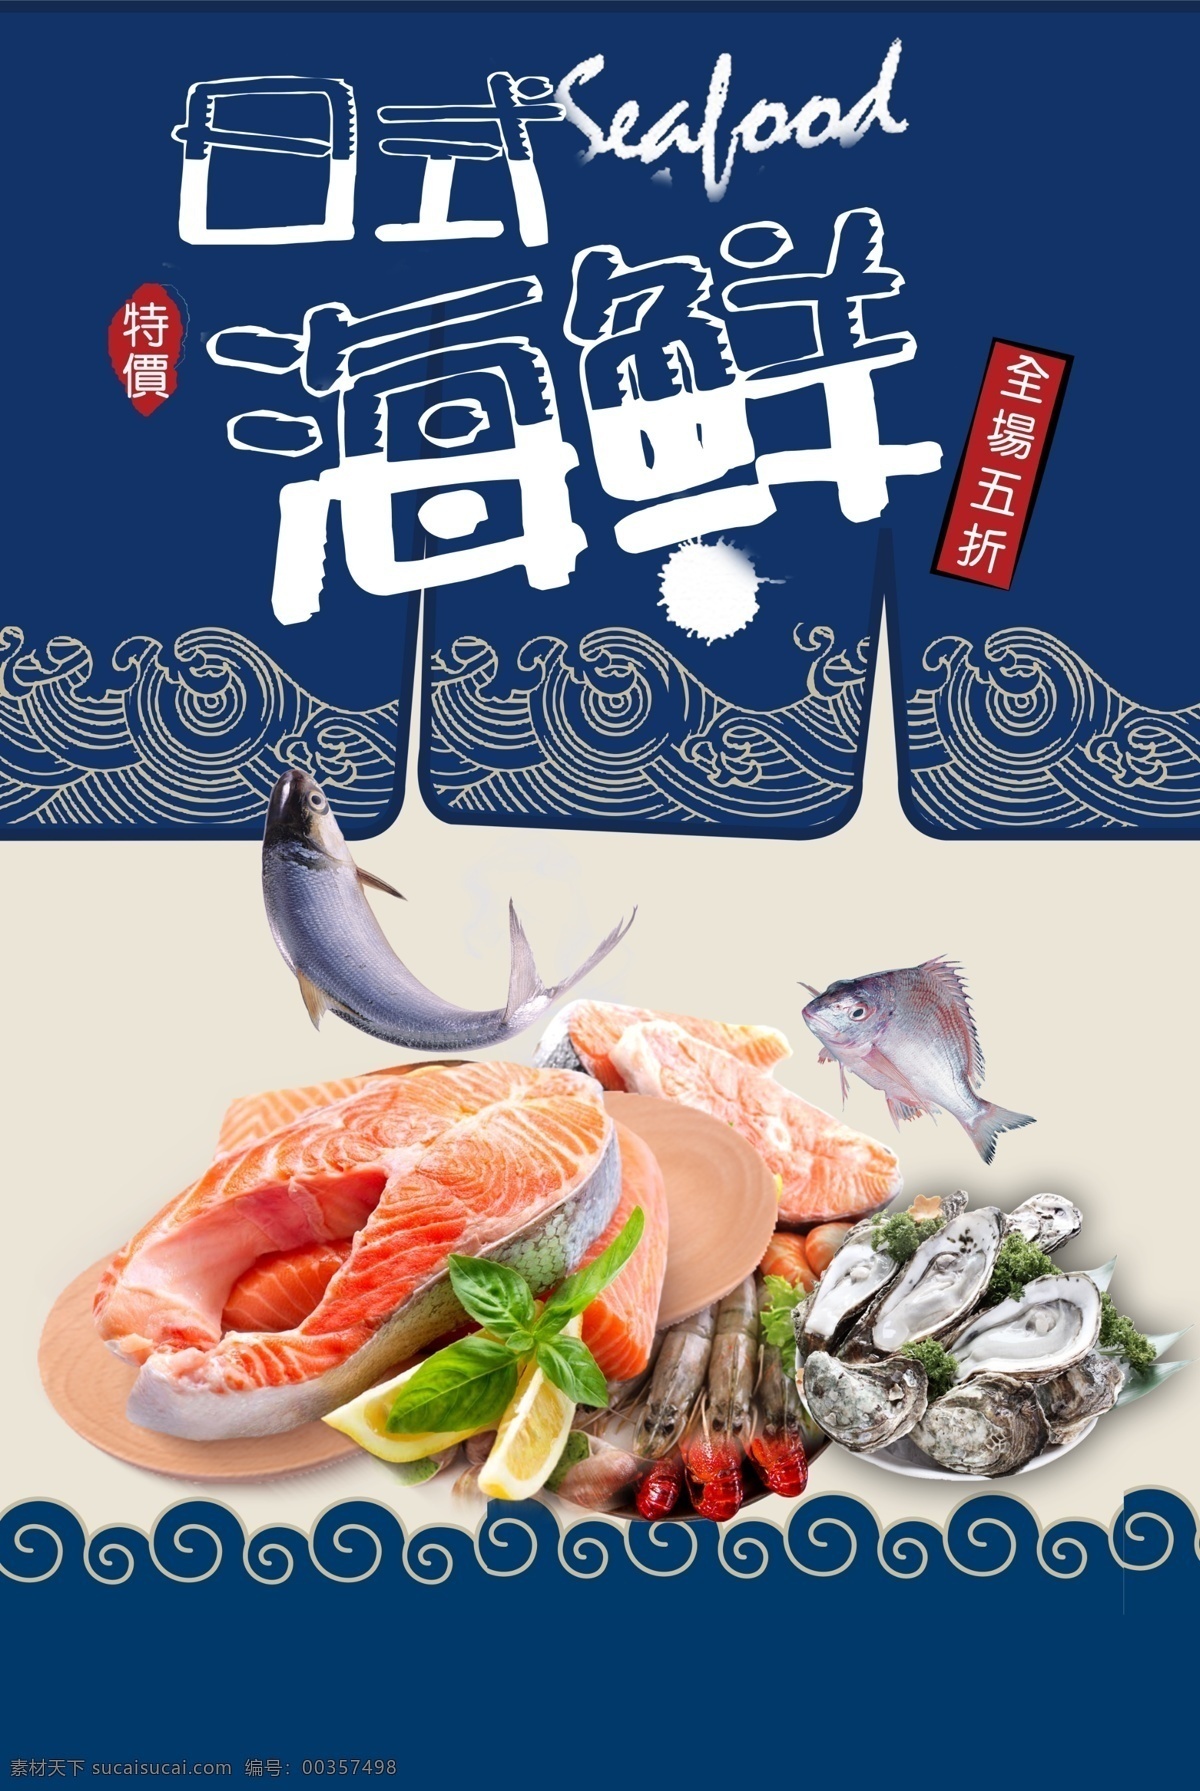 海鲜 美食 食 材 促销活动 海报 食材 促销 活动 餐饮美食 类